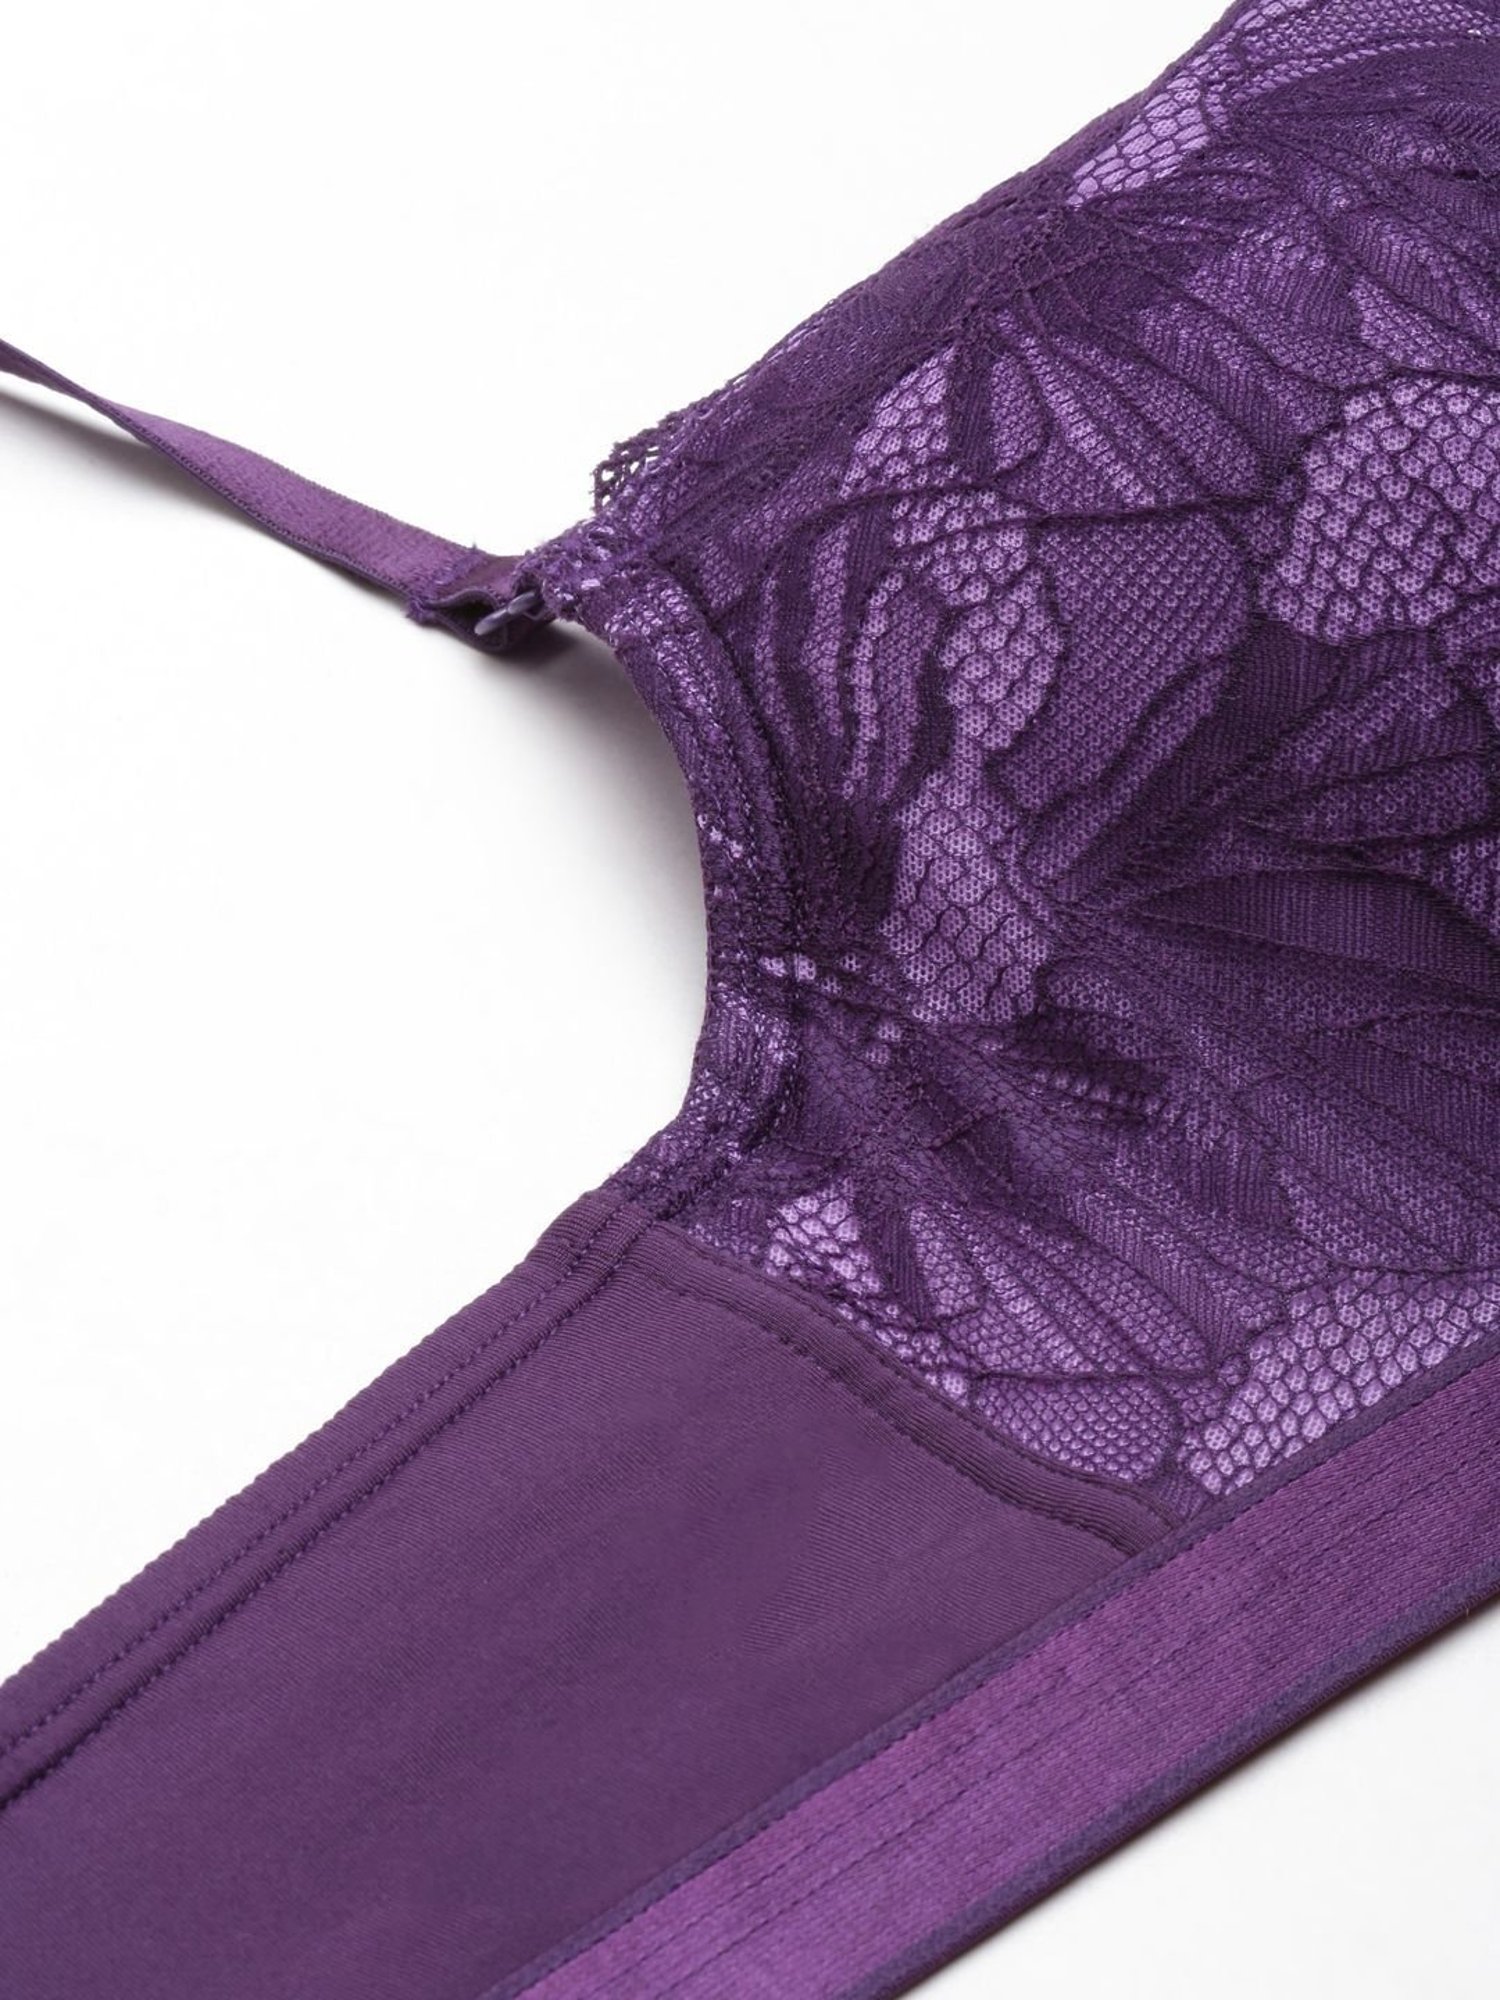 Enamor seamless plunge push-up bra online--Prism Violet